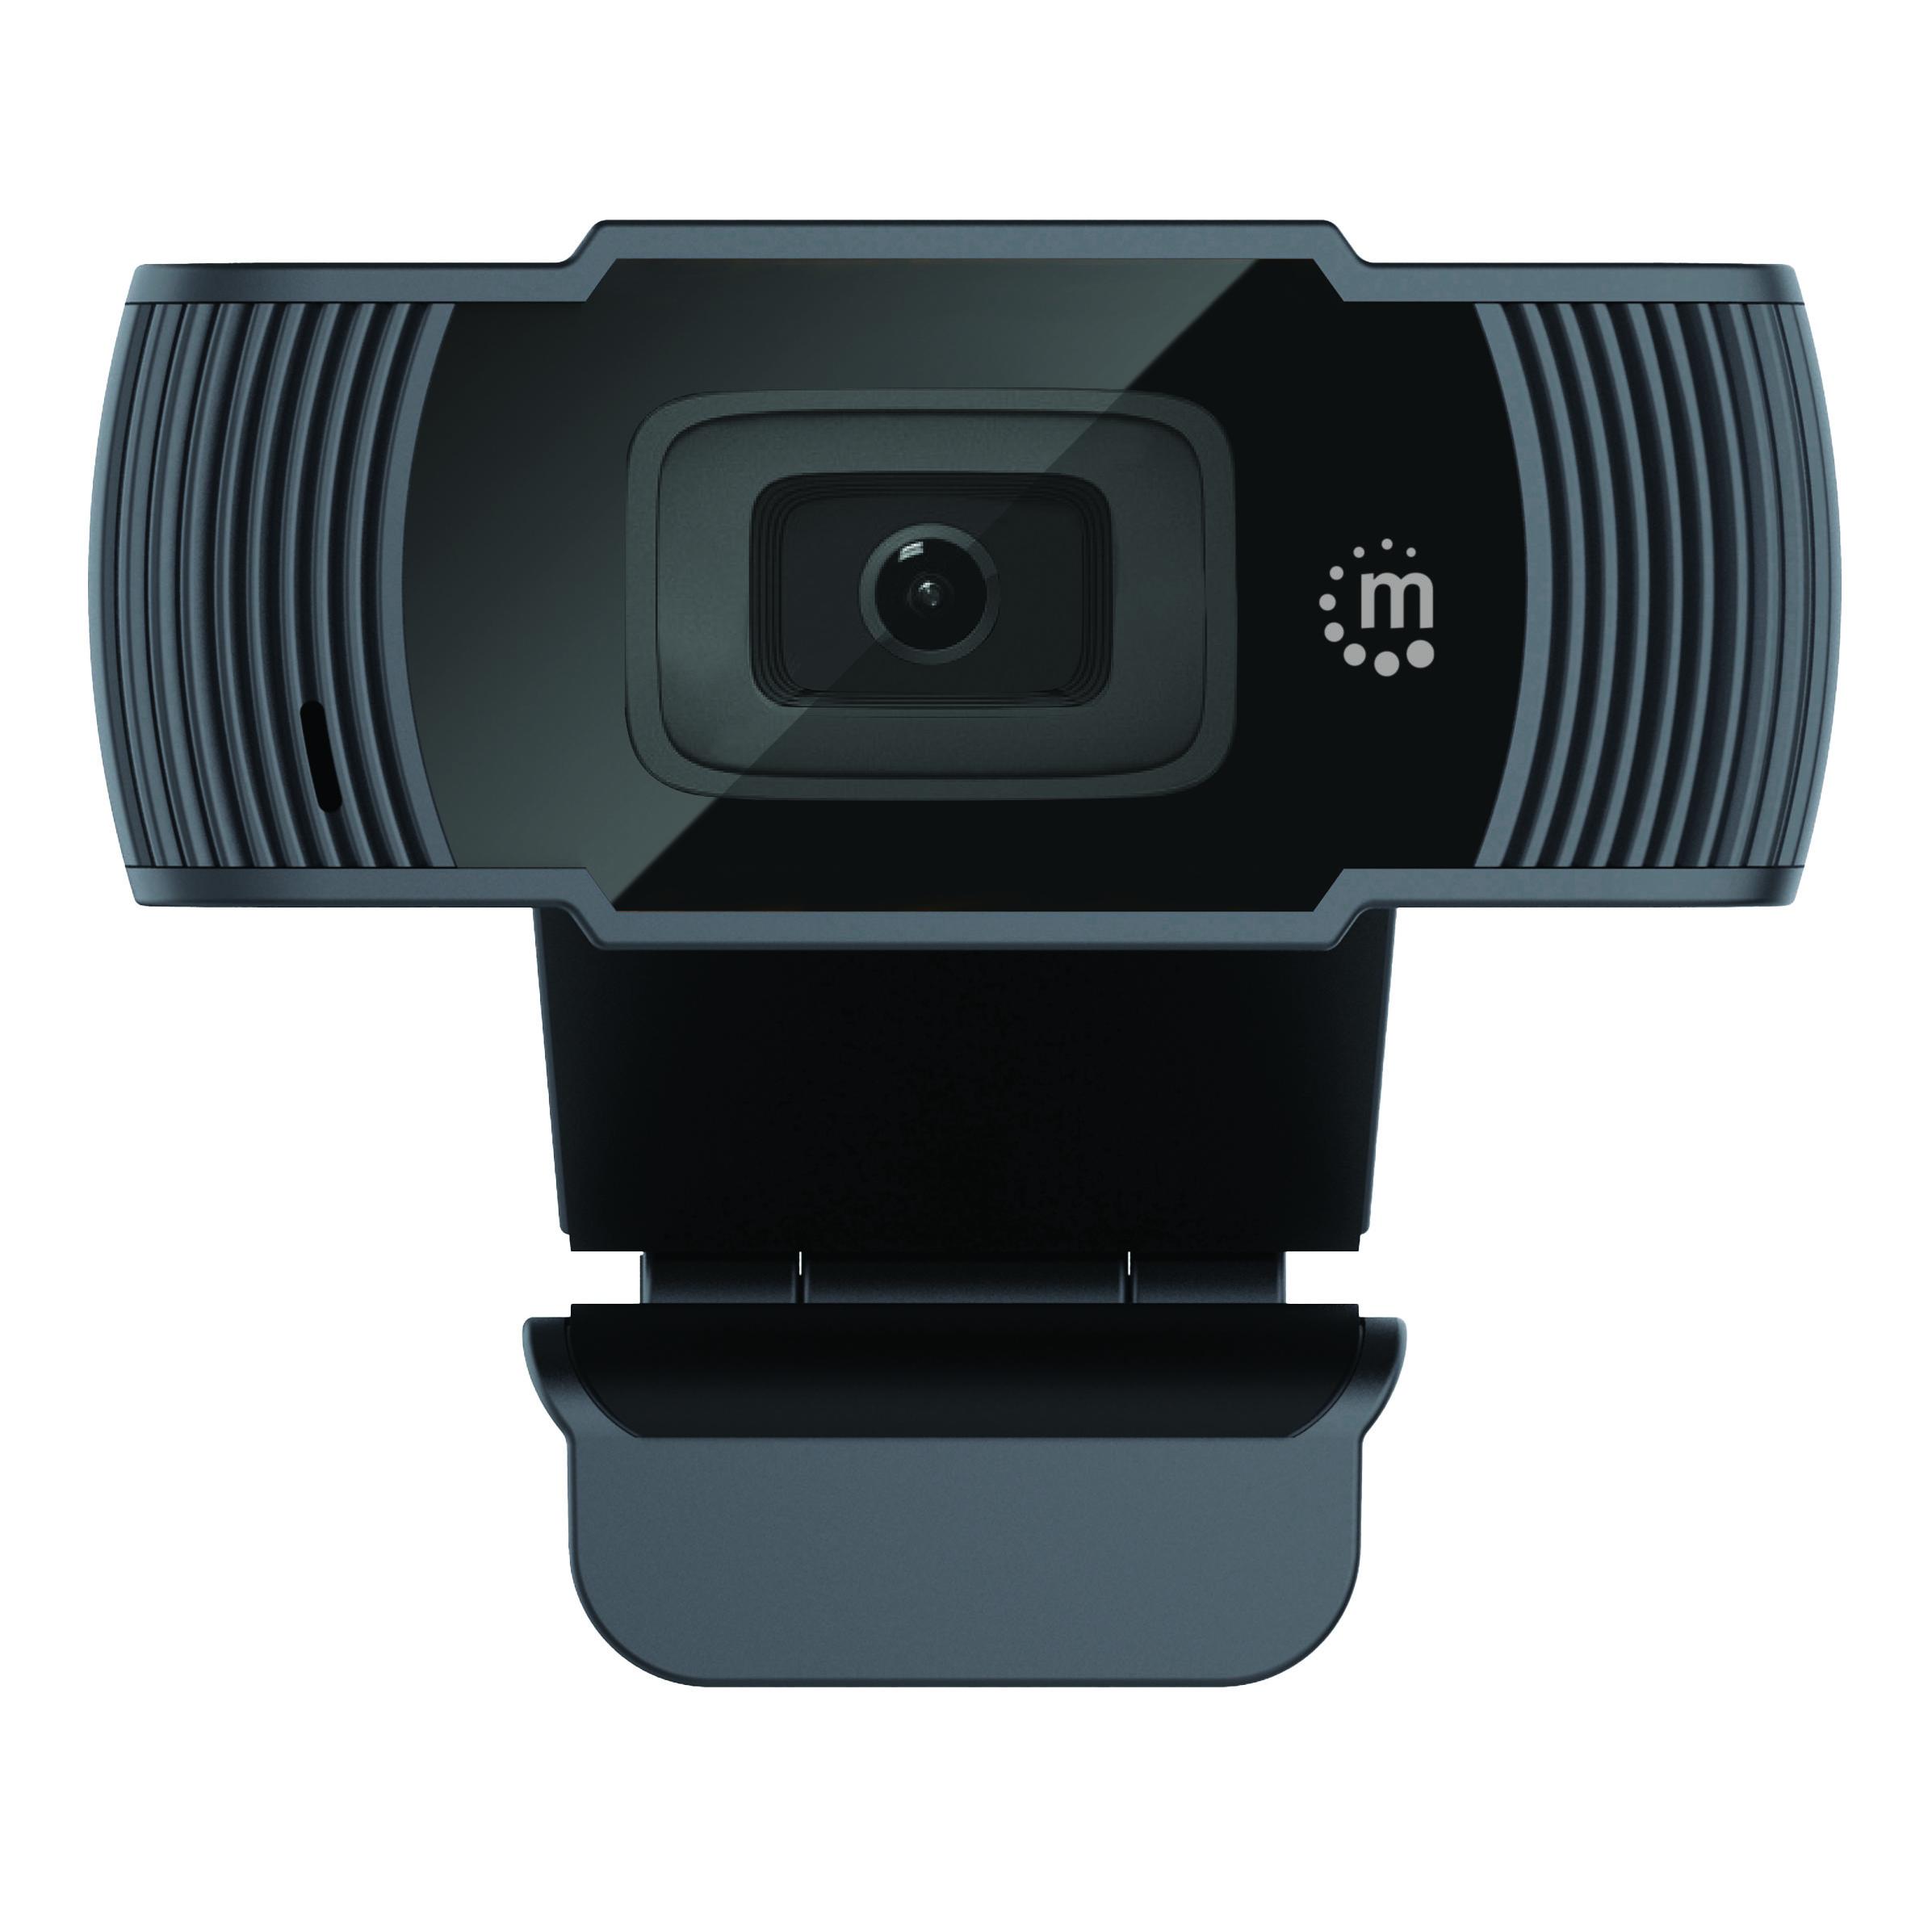 Webcam USB 1080p